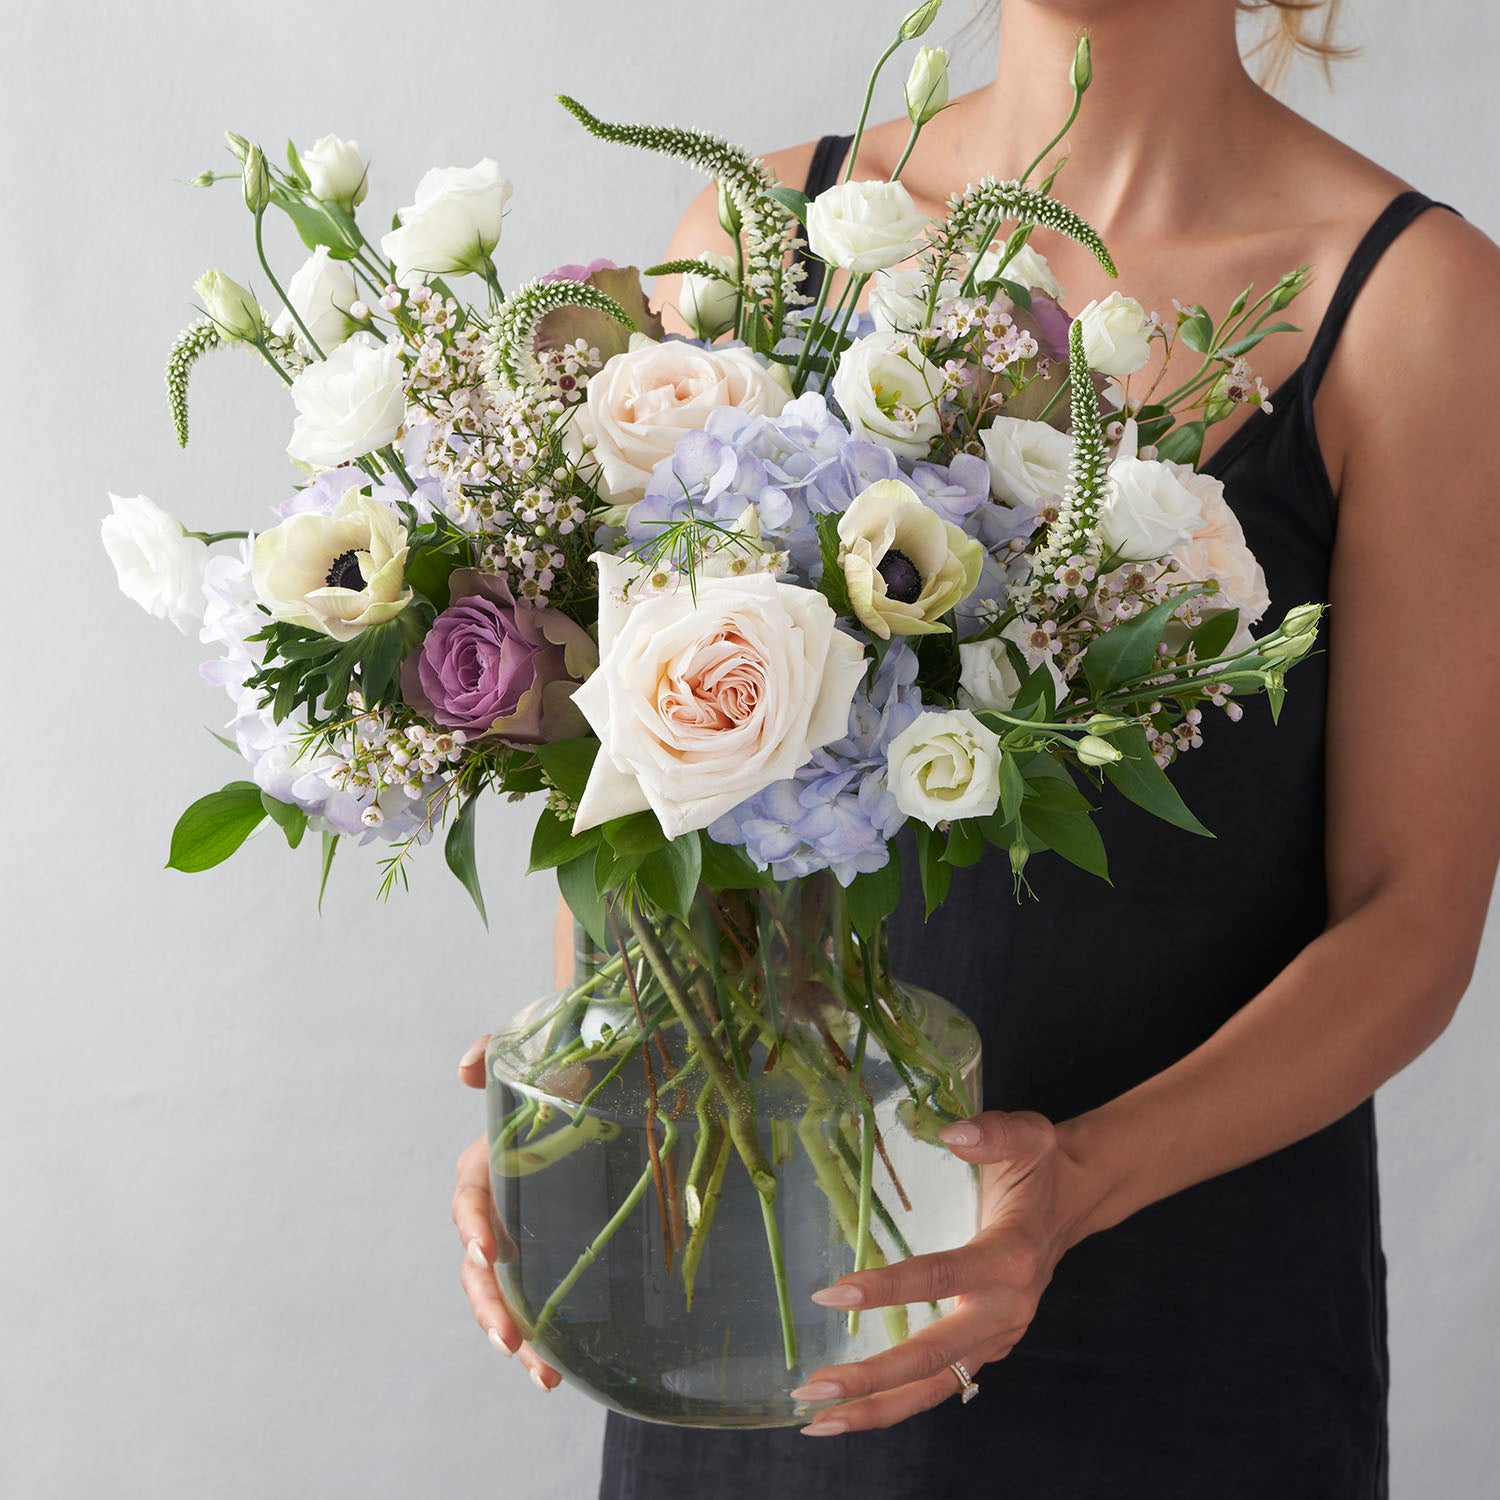 Woman in sleaveless black dress holding glass vase full of blue cream lavender and white flowers.